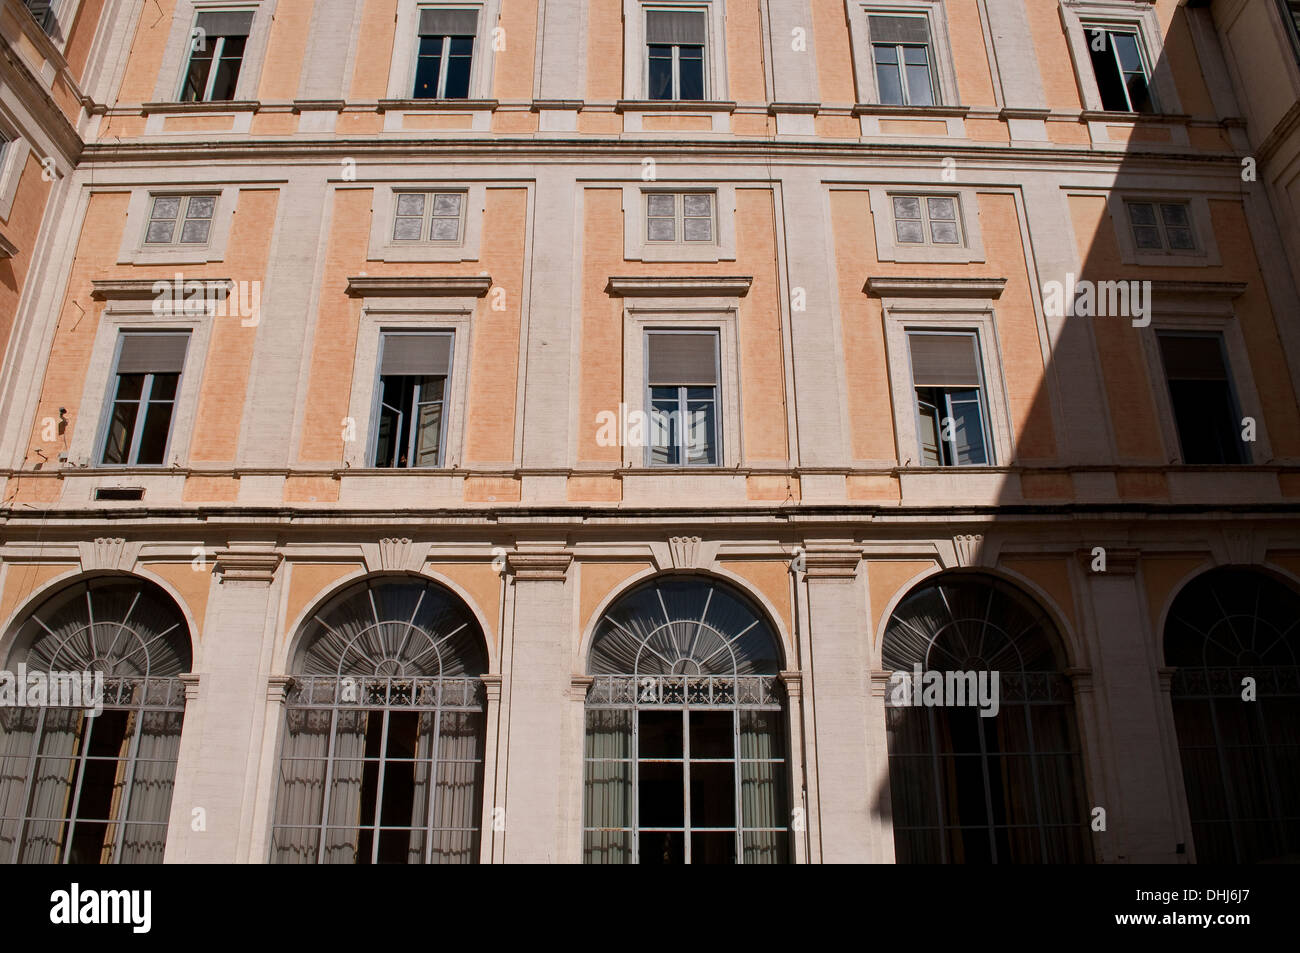 Palazzo Corsini - Galleria Nazionale d'Arte Antica, Trastevere, Rome, Italy Stock Photo